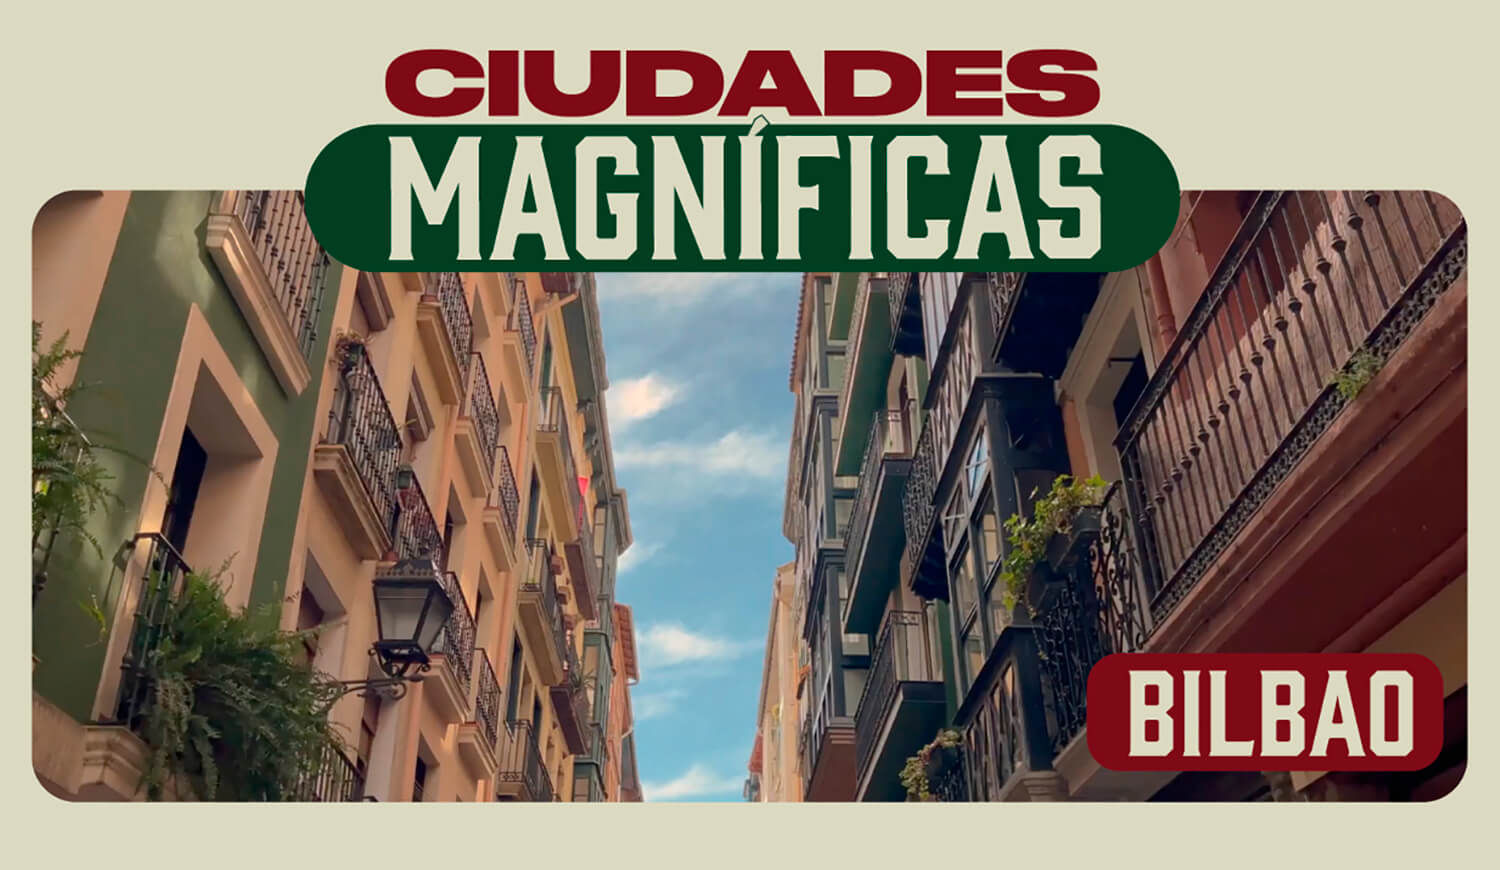 Ciudades Magníficas Bilbao